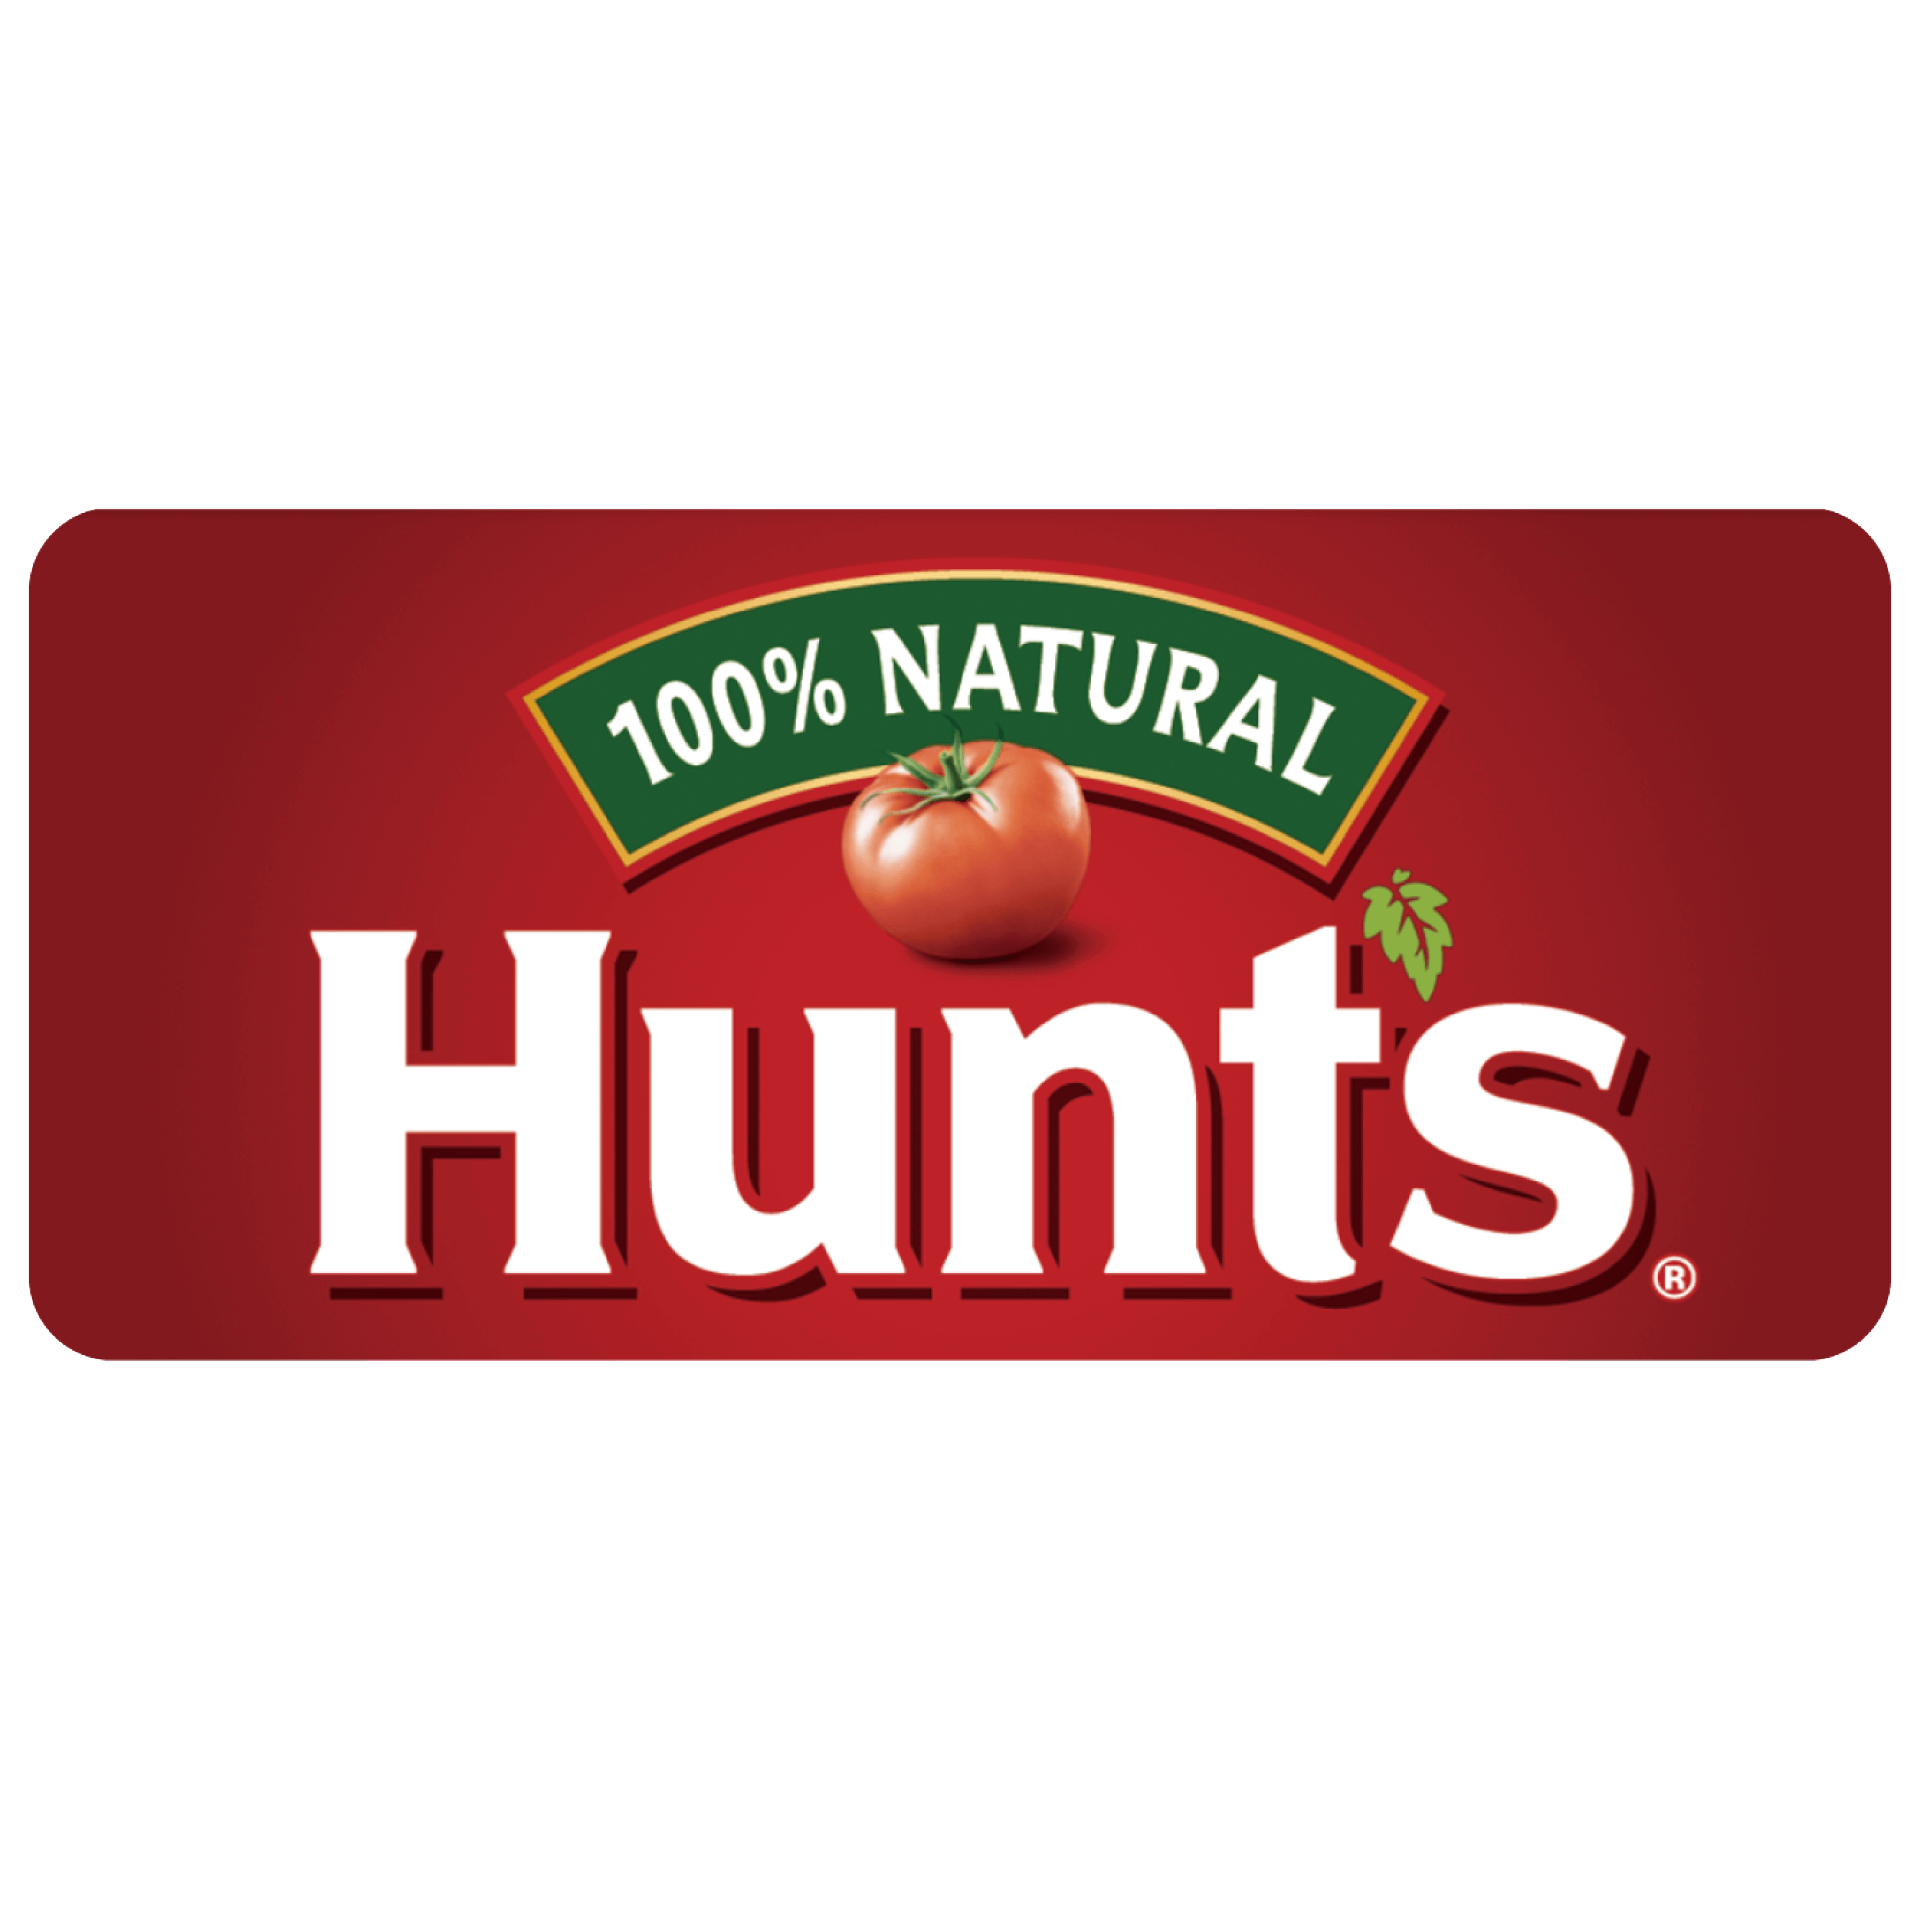 HUNT'S 漢斯蕃茄製品